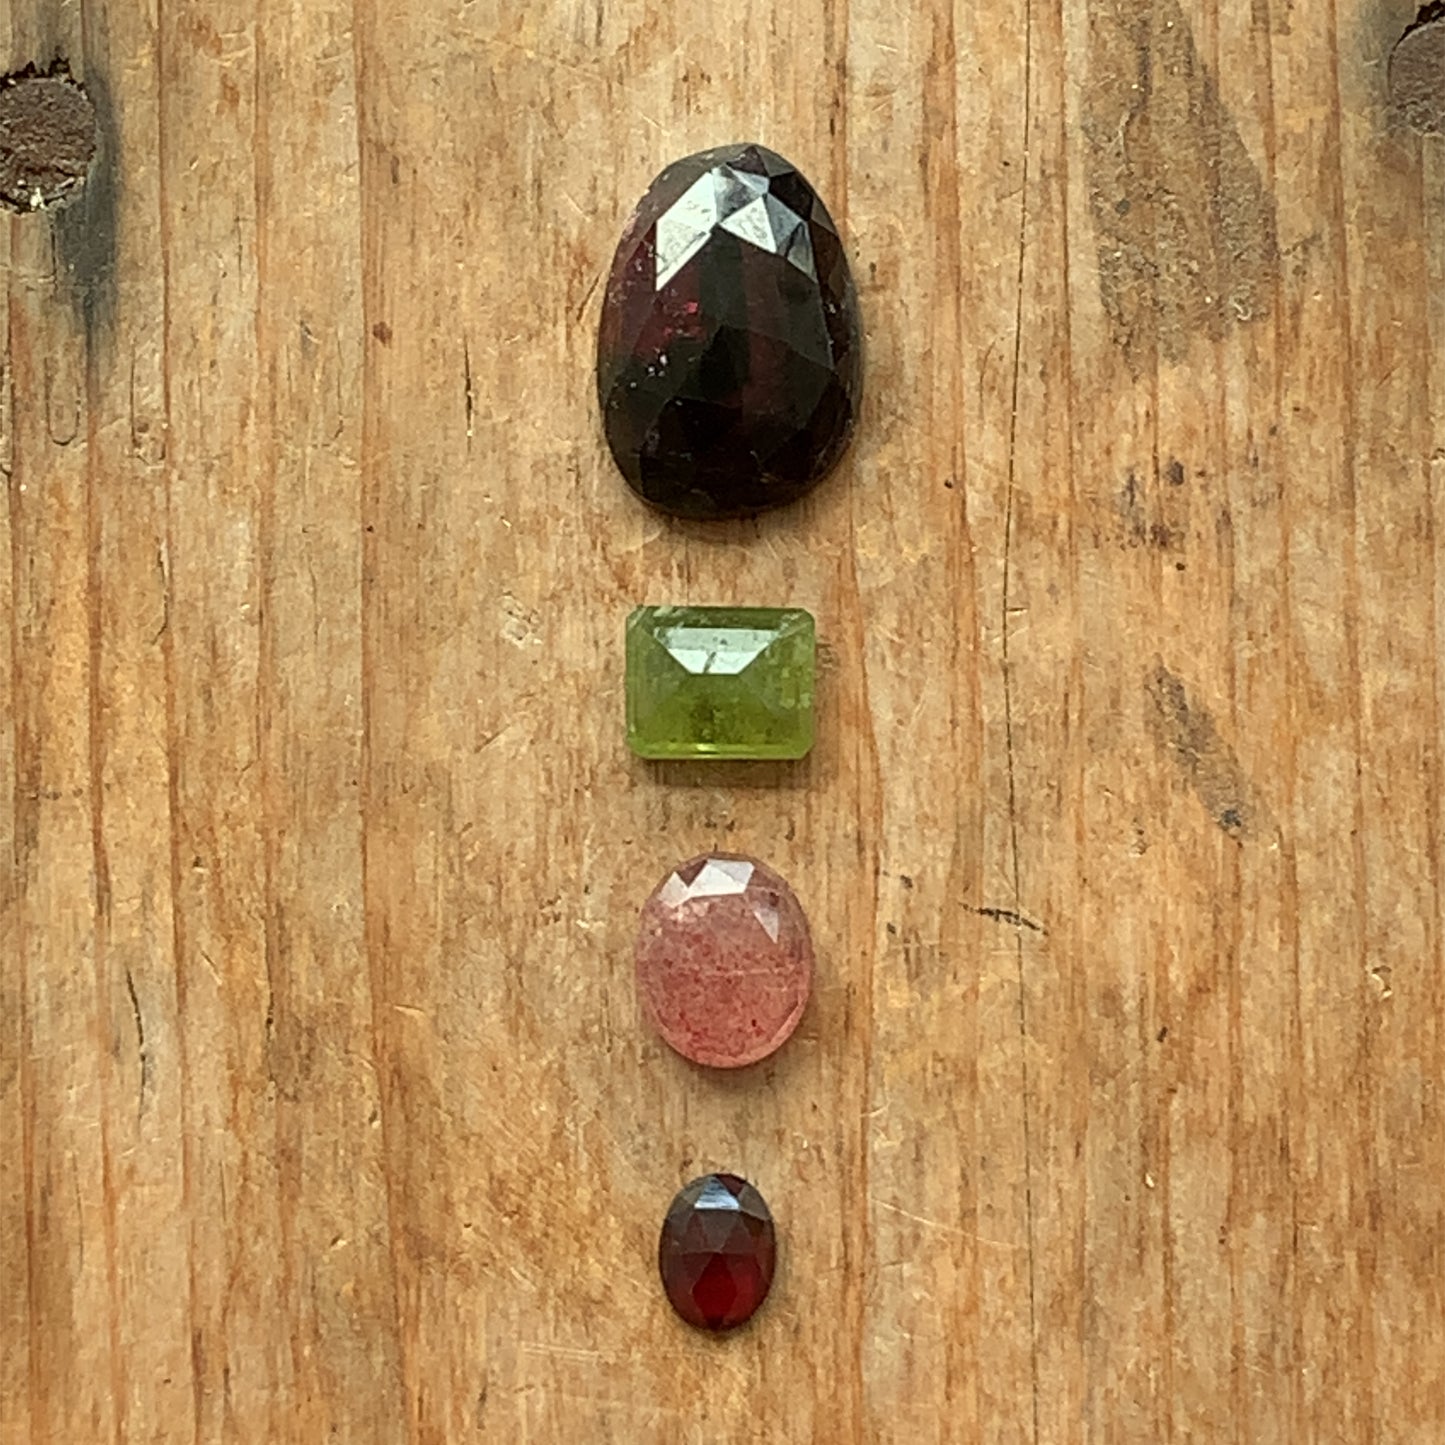 Gemstone Collection 330 - Rhodolite Garnet, Vasonite, Cherry Quartz, Hessonite 19CT (G00330)